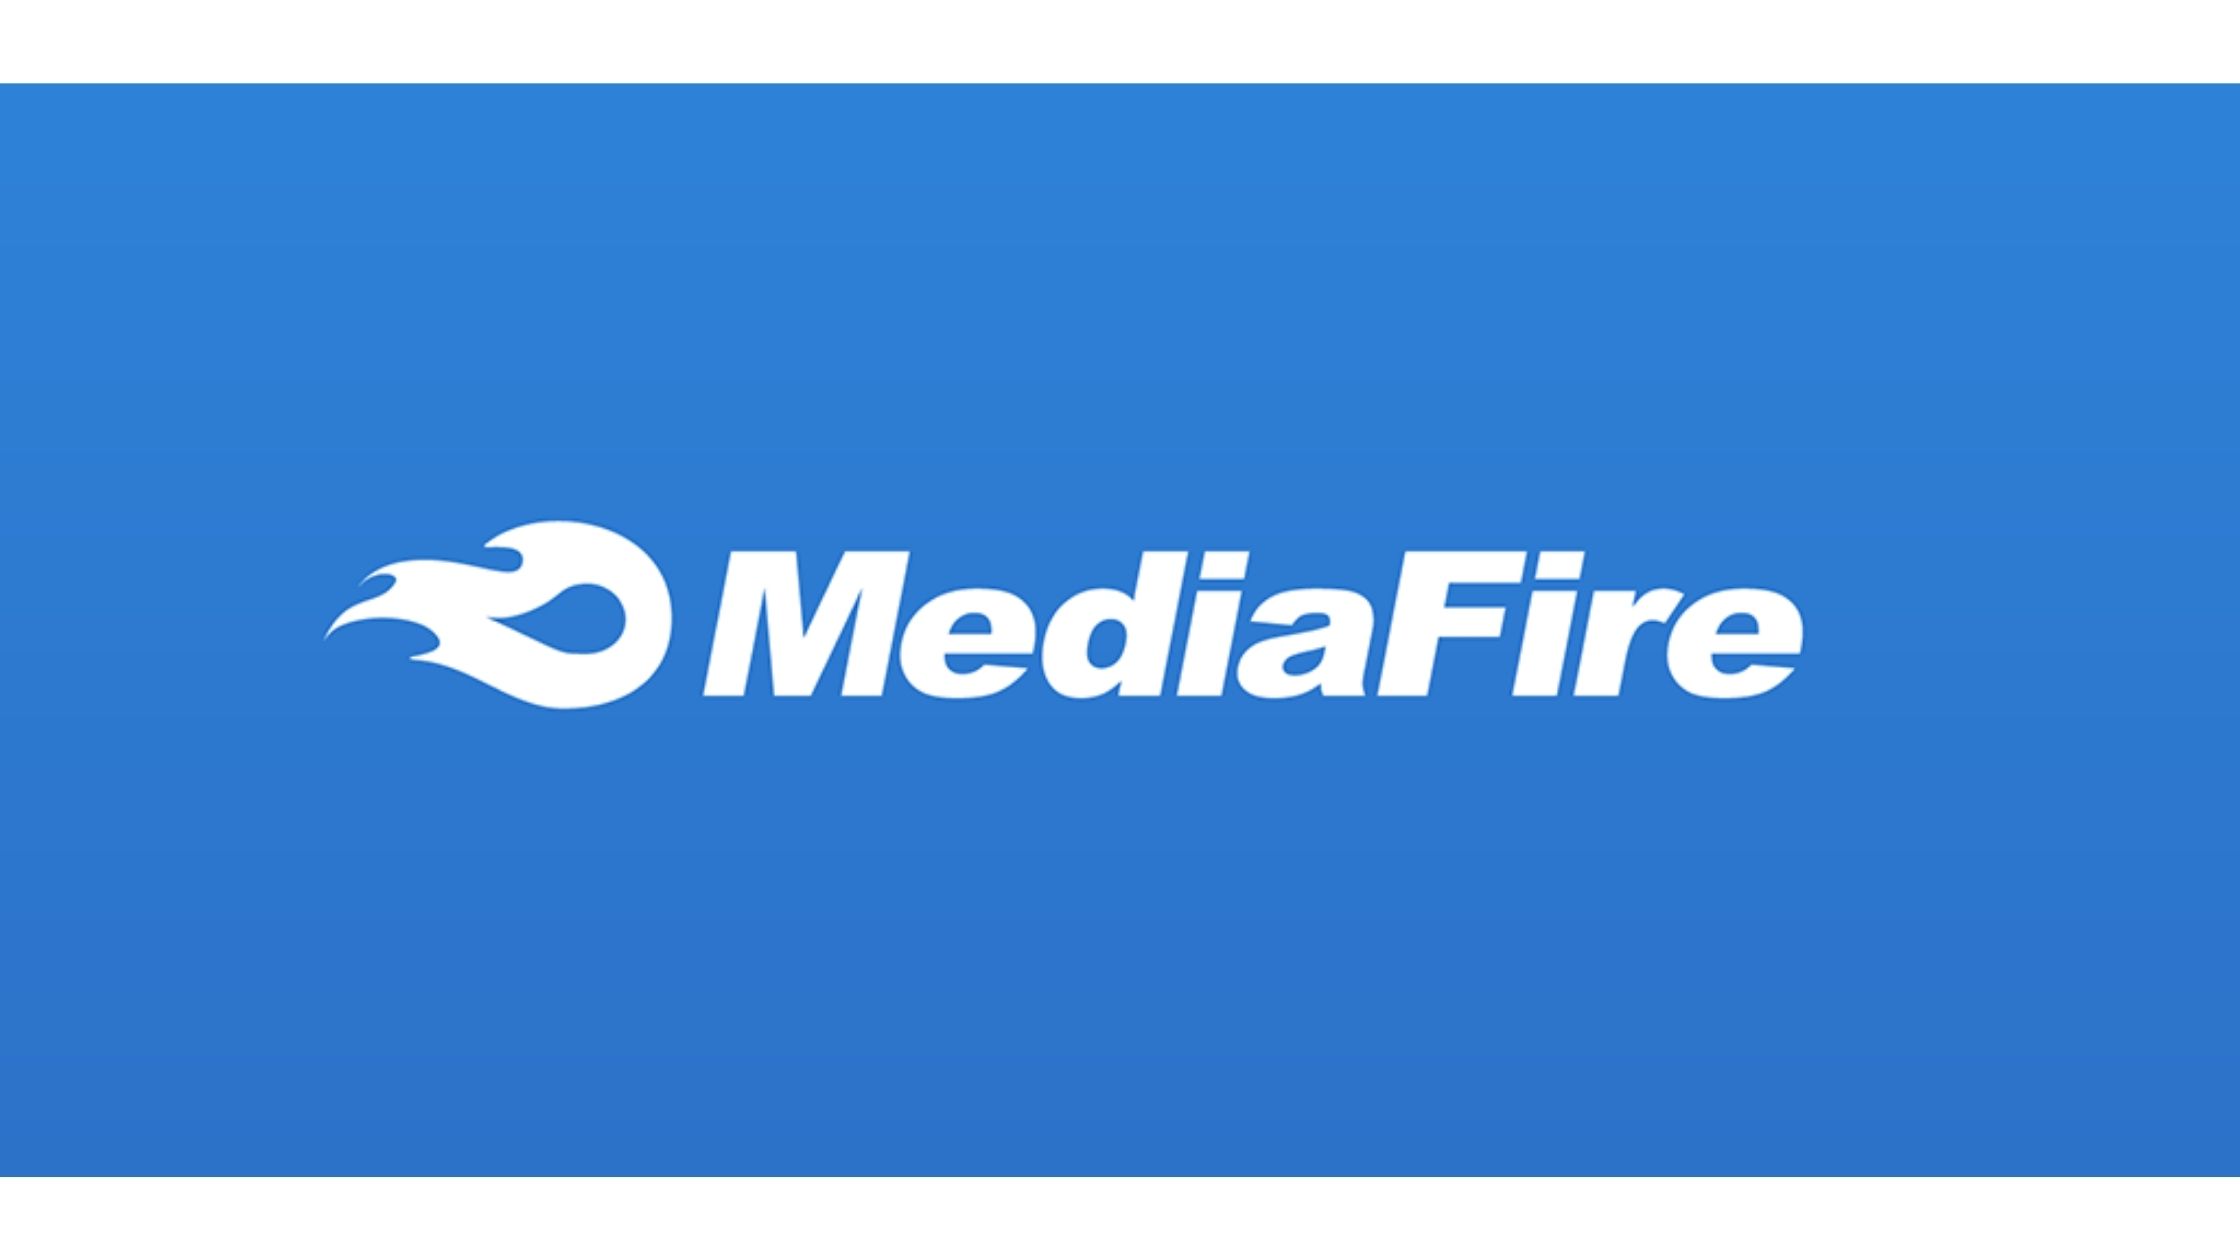 Is Mediafire App Safe Or Not?